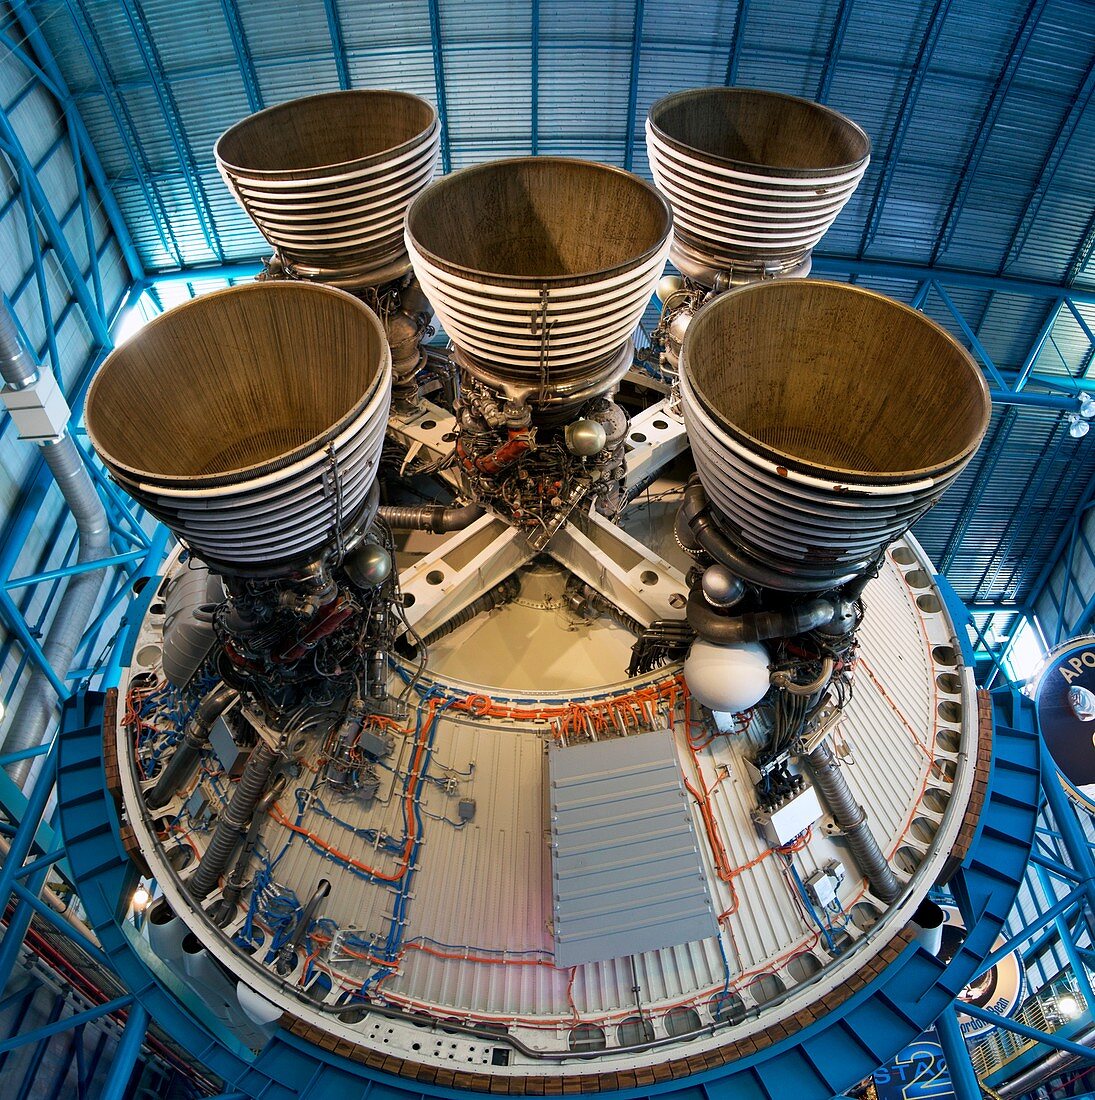 Saturn V second stage J-2 engines.